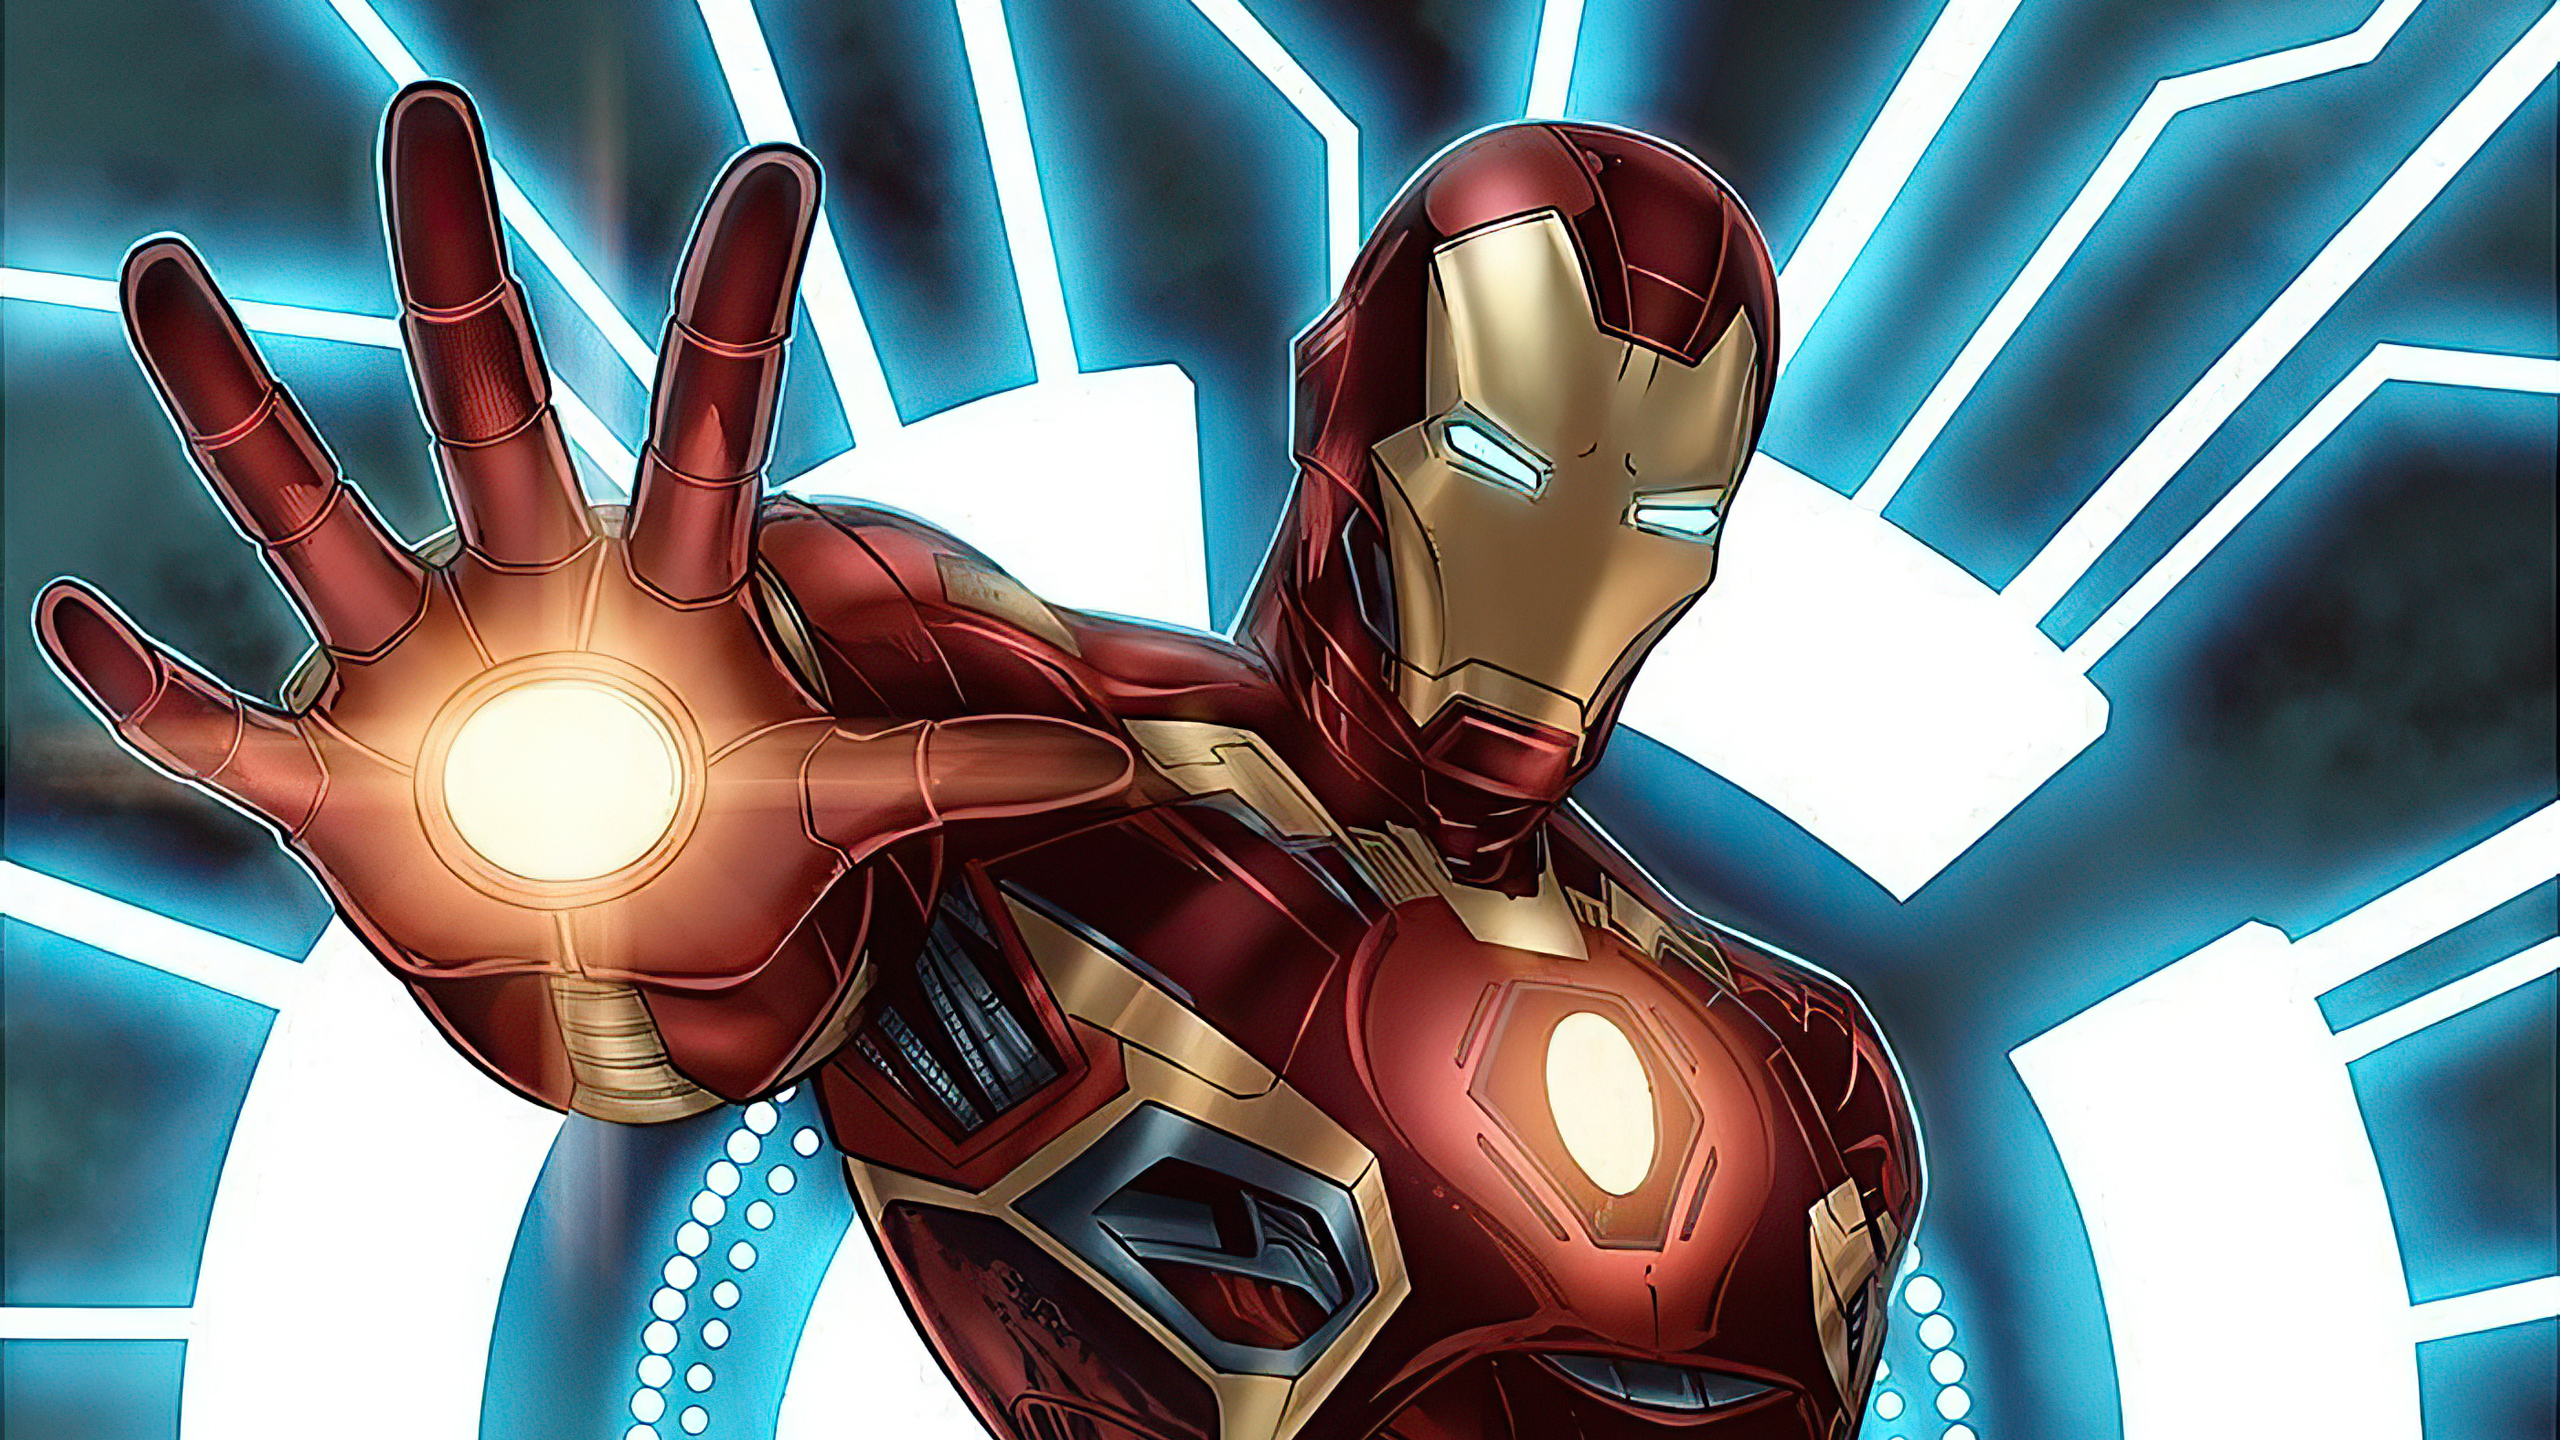 Iron Man Marvel Comics Wallpaper - Resolution:2560x1440 - ID:1176364 -  